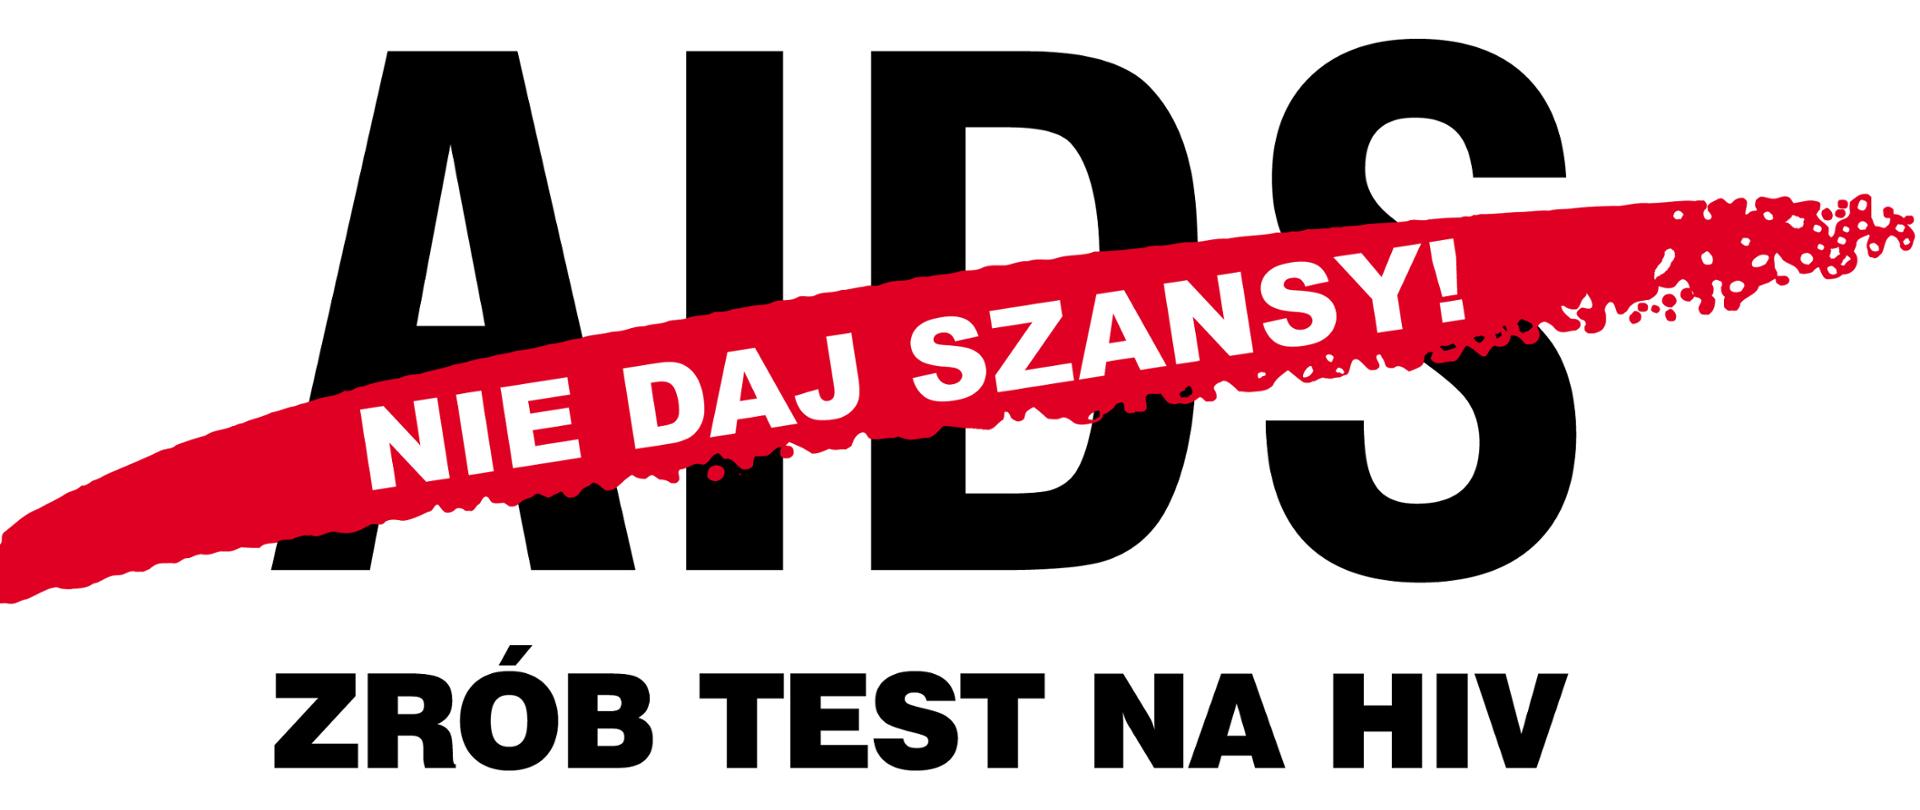 ZRÓB TEST NA HIV czarny tekst na białym tle